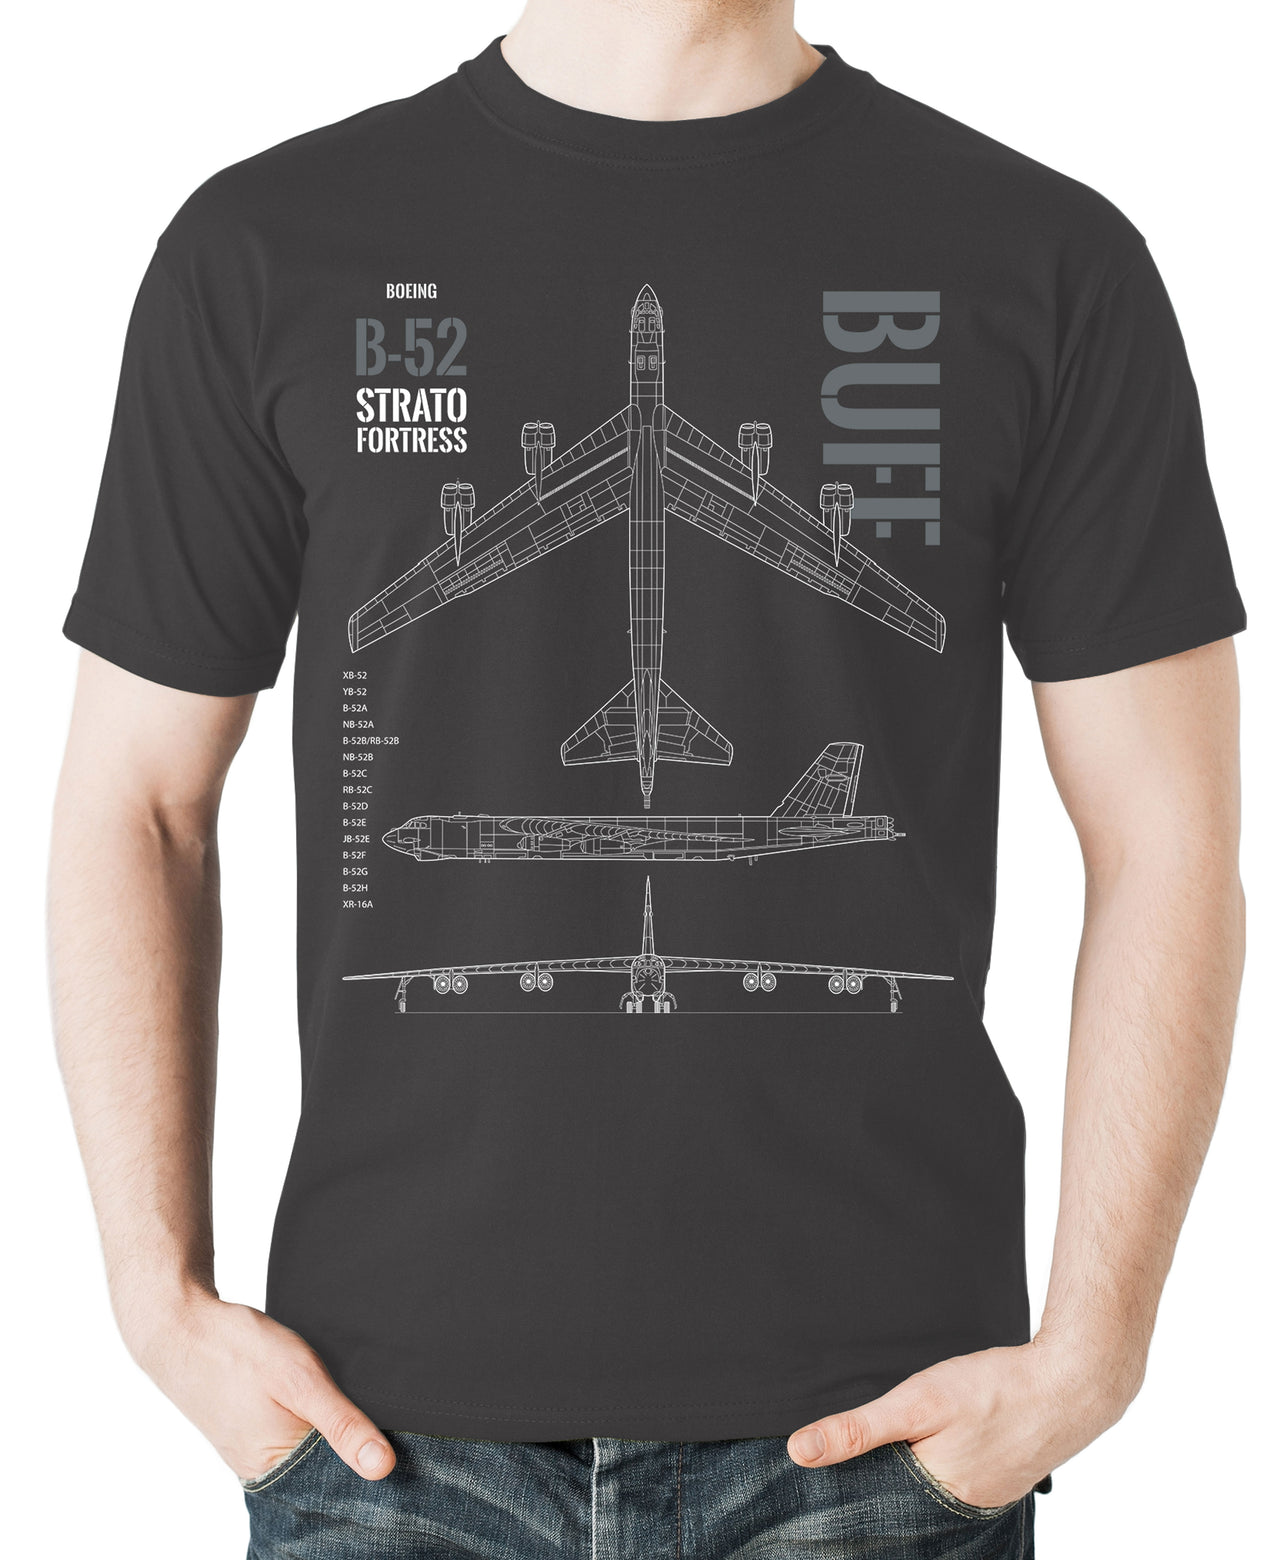 B-52 Stratofortress - T-shirt